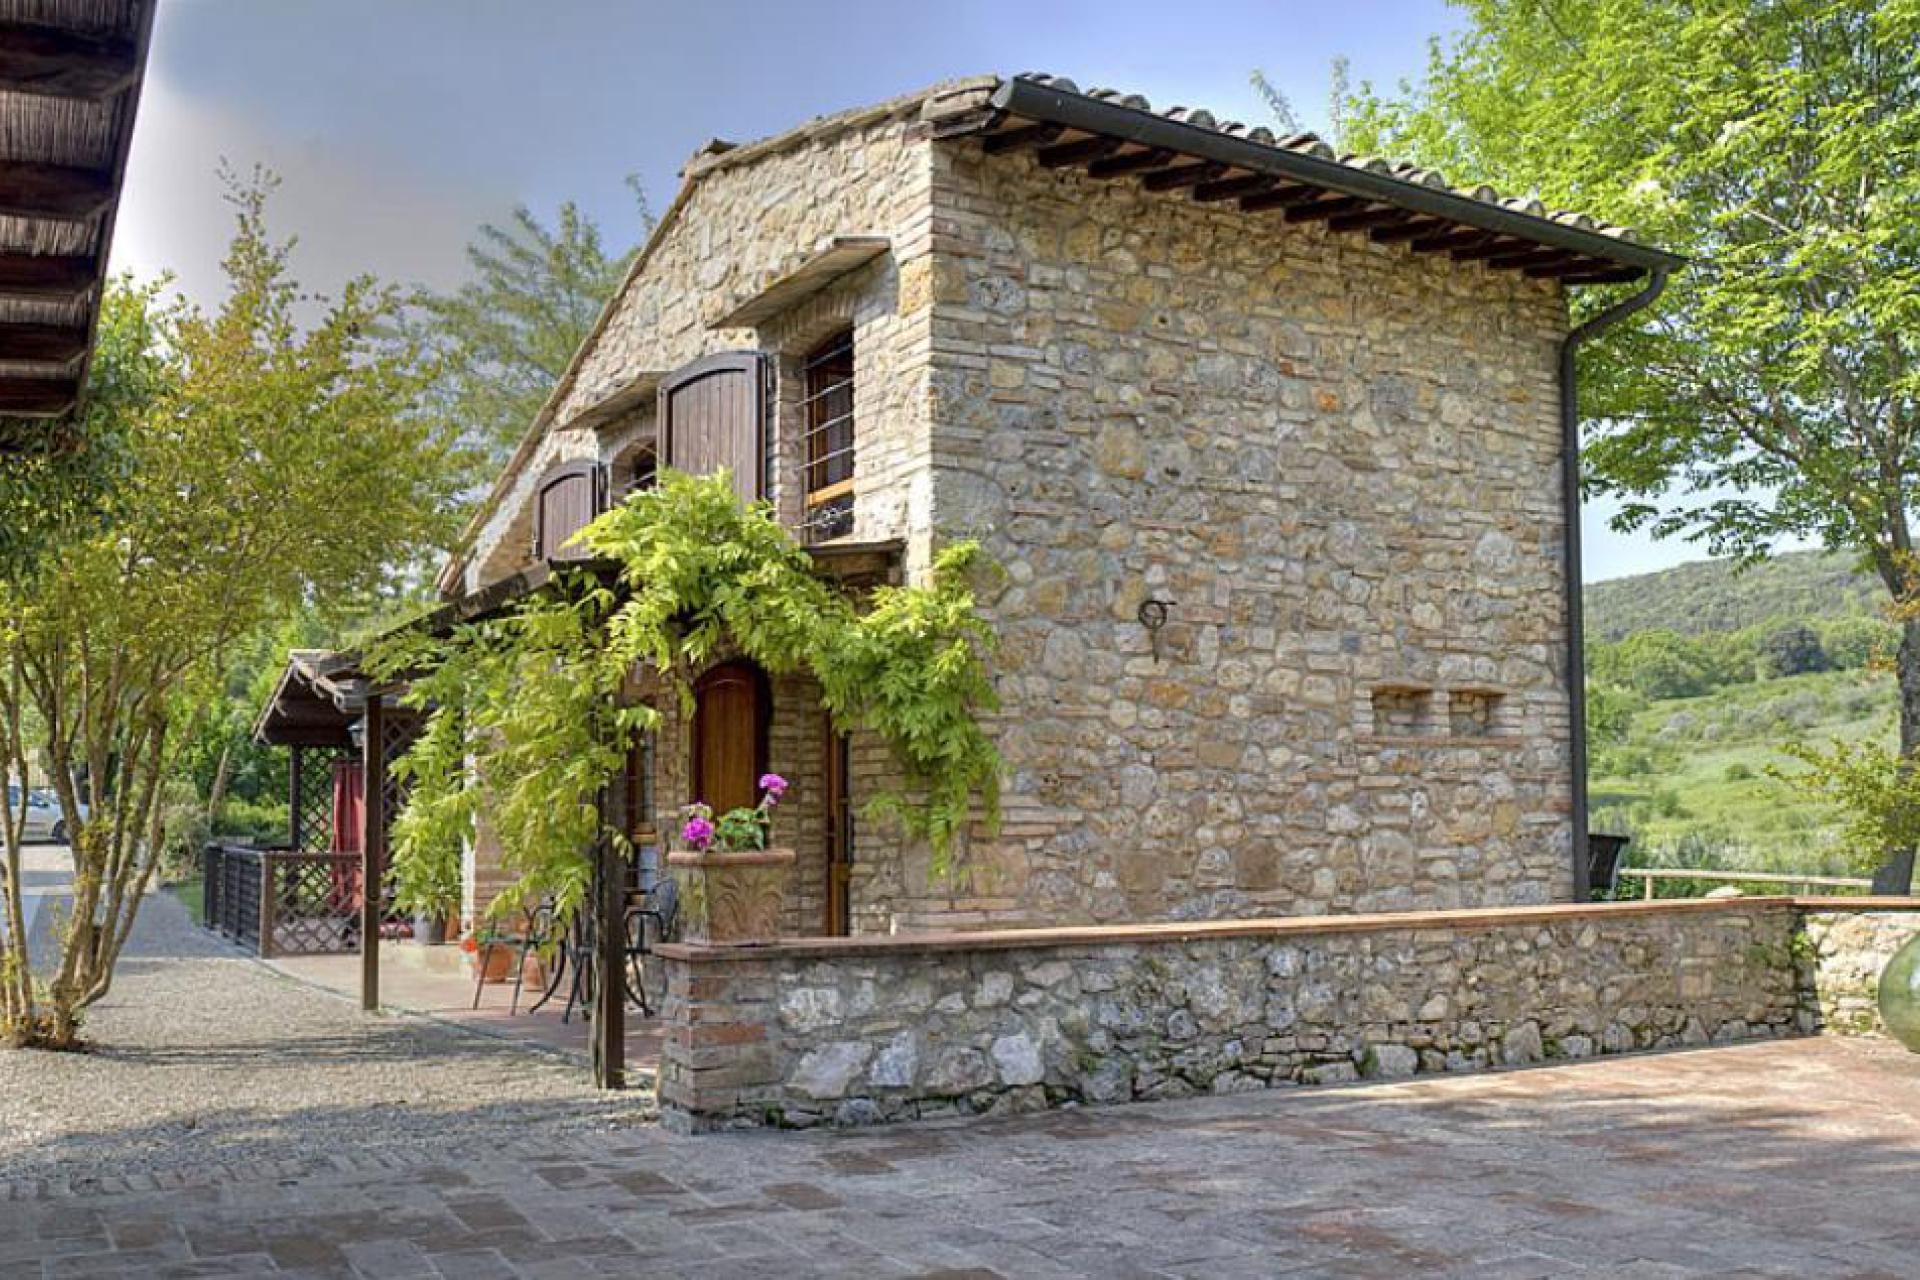 Agriturismo Tuscany Agriturismo with restaurant near San Gimignano, Tuscany